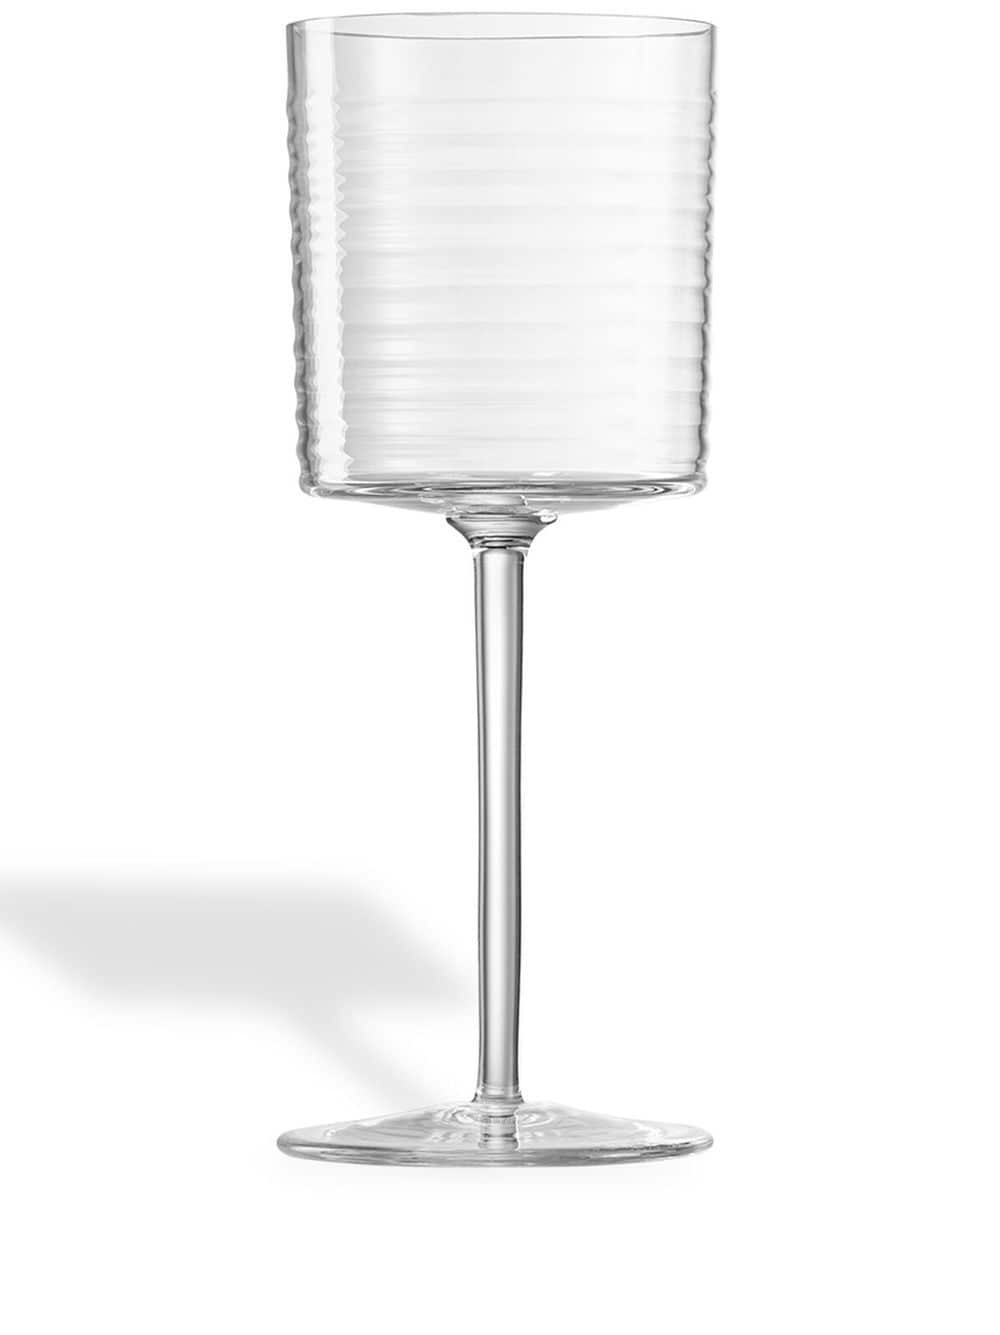 Nasonmoretti Gigolo Water Glass In Transparent